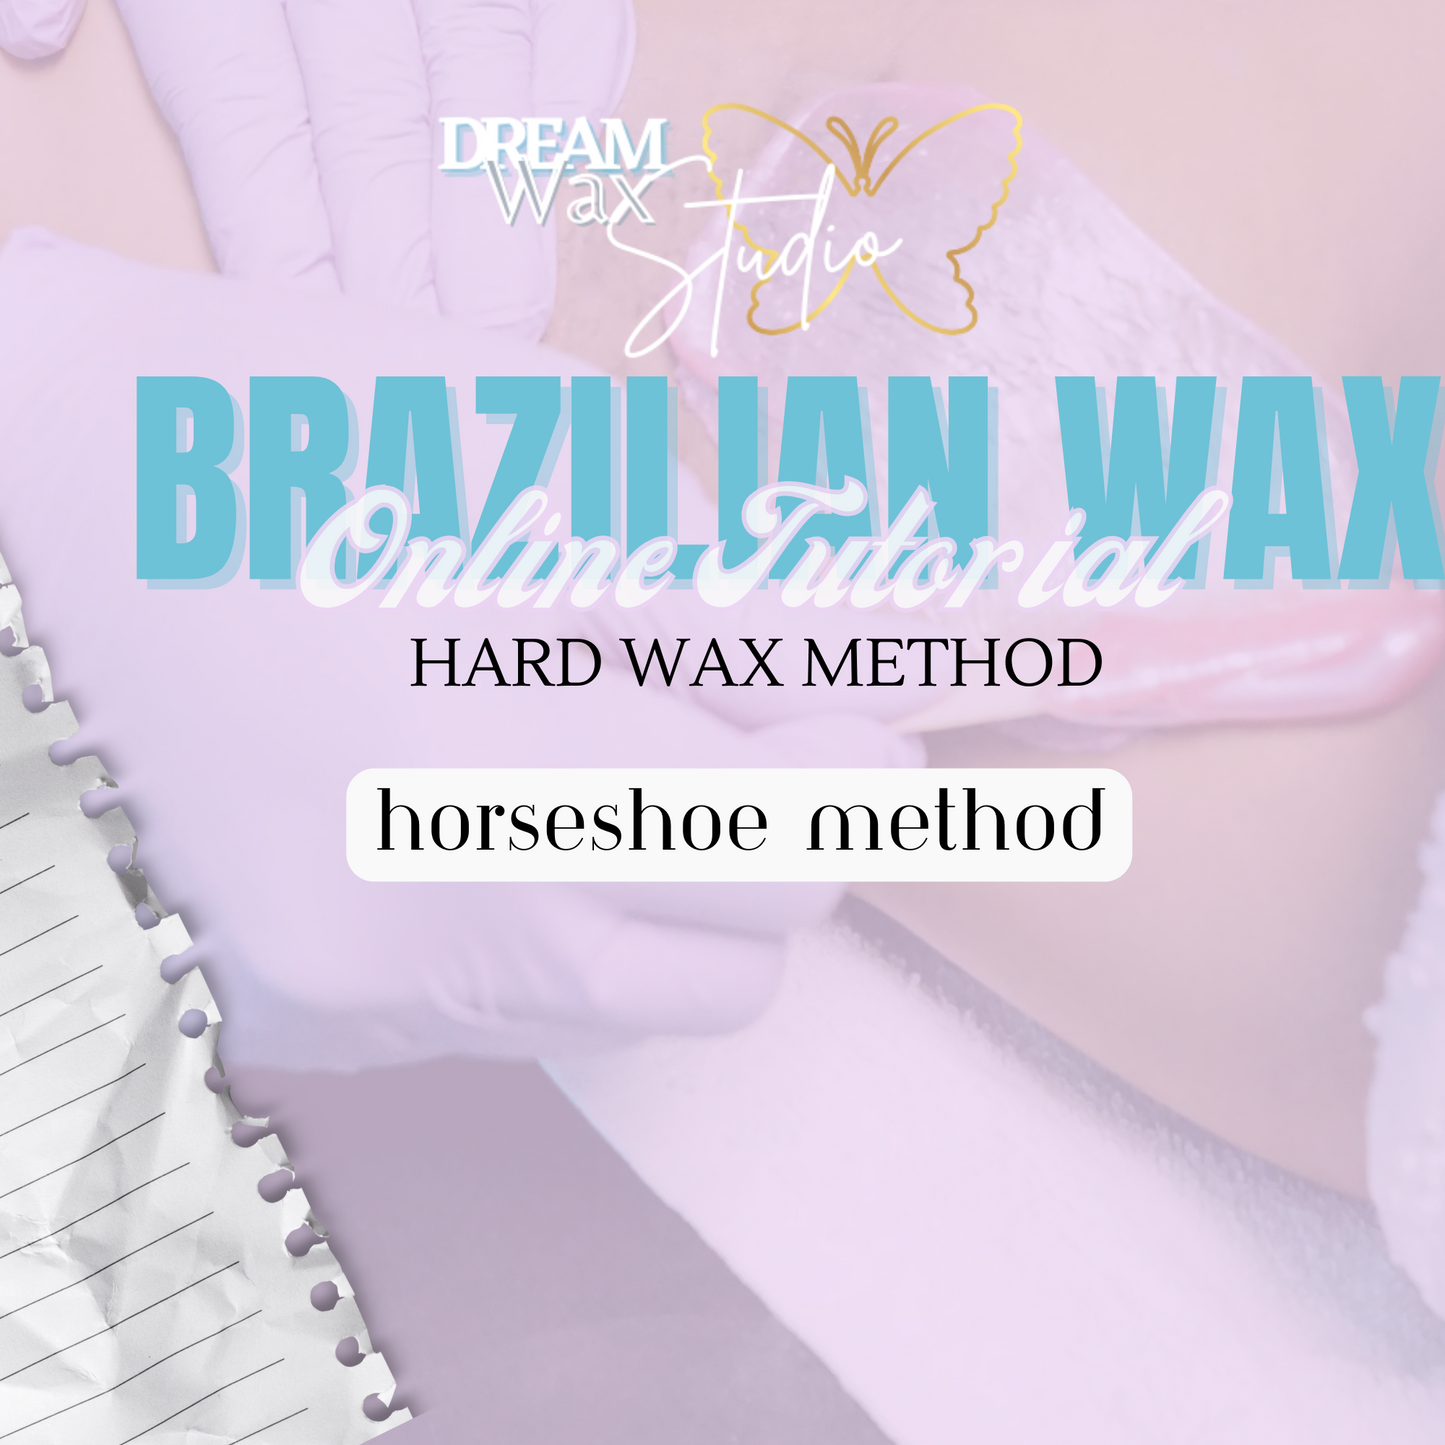 Brazilian Wax Tutorial: Horseshoe Method